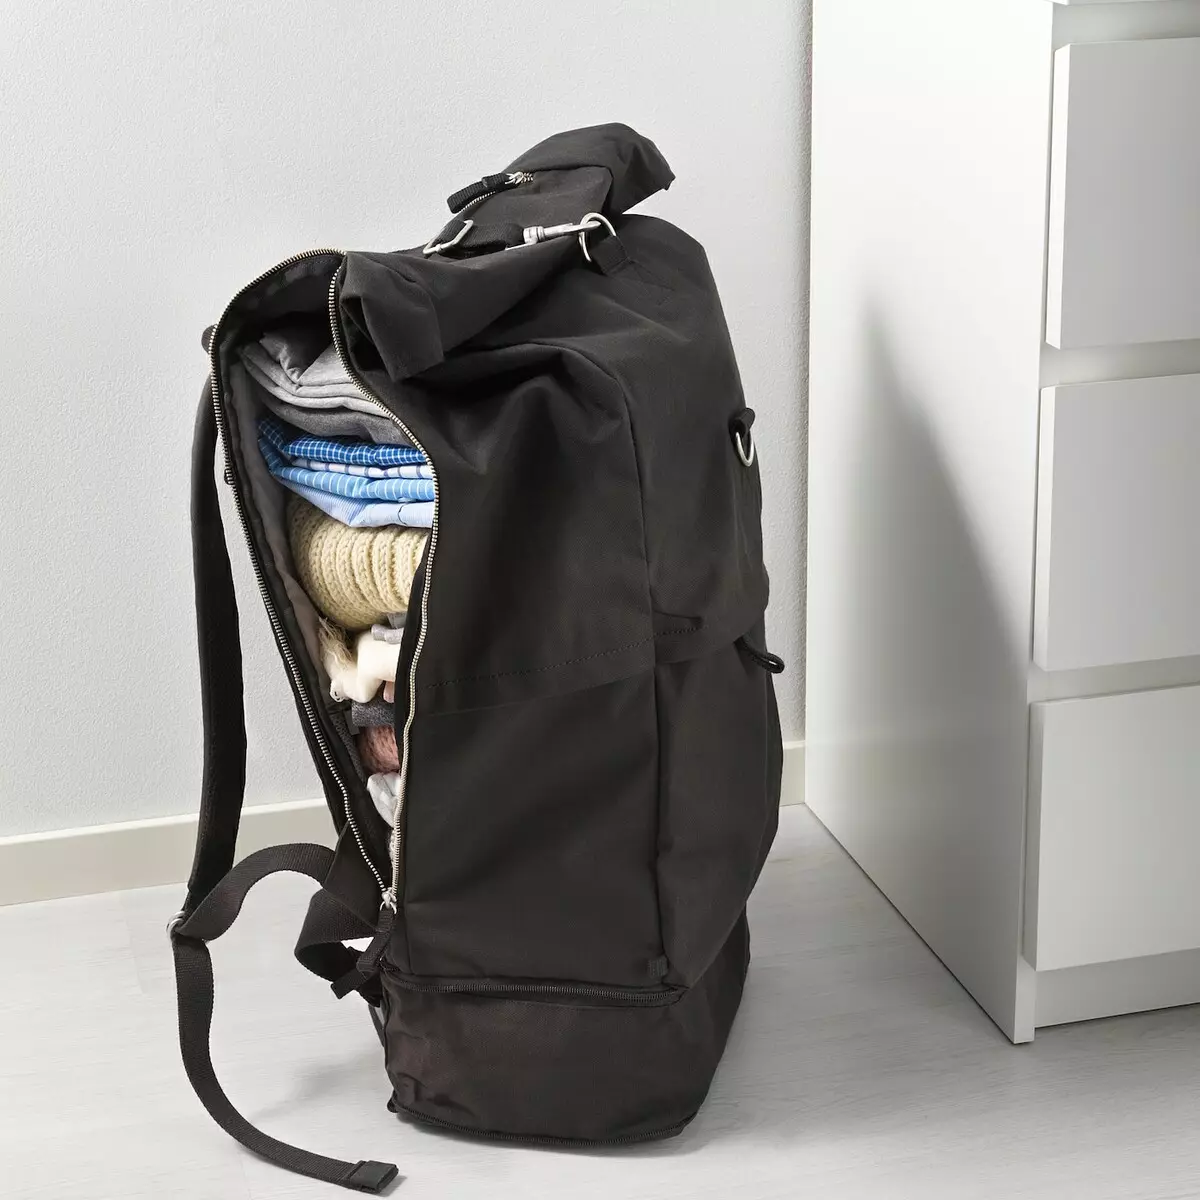 IKEA Backpacks: მიმოხილვა შავი backpack-ჩემოდანი ბორბლები და სხვა მოდელები, როგორ ზრუნვა 15421_12